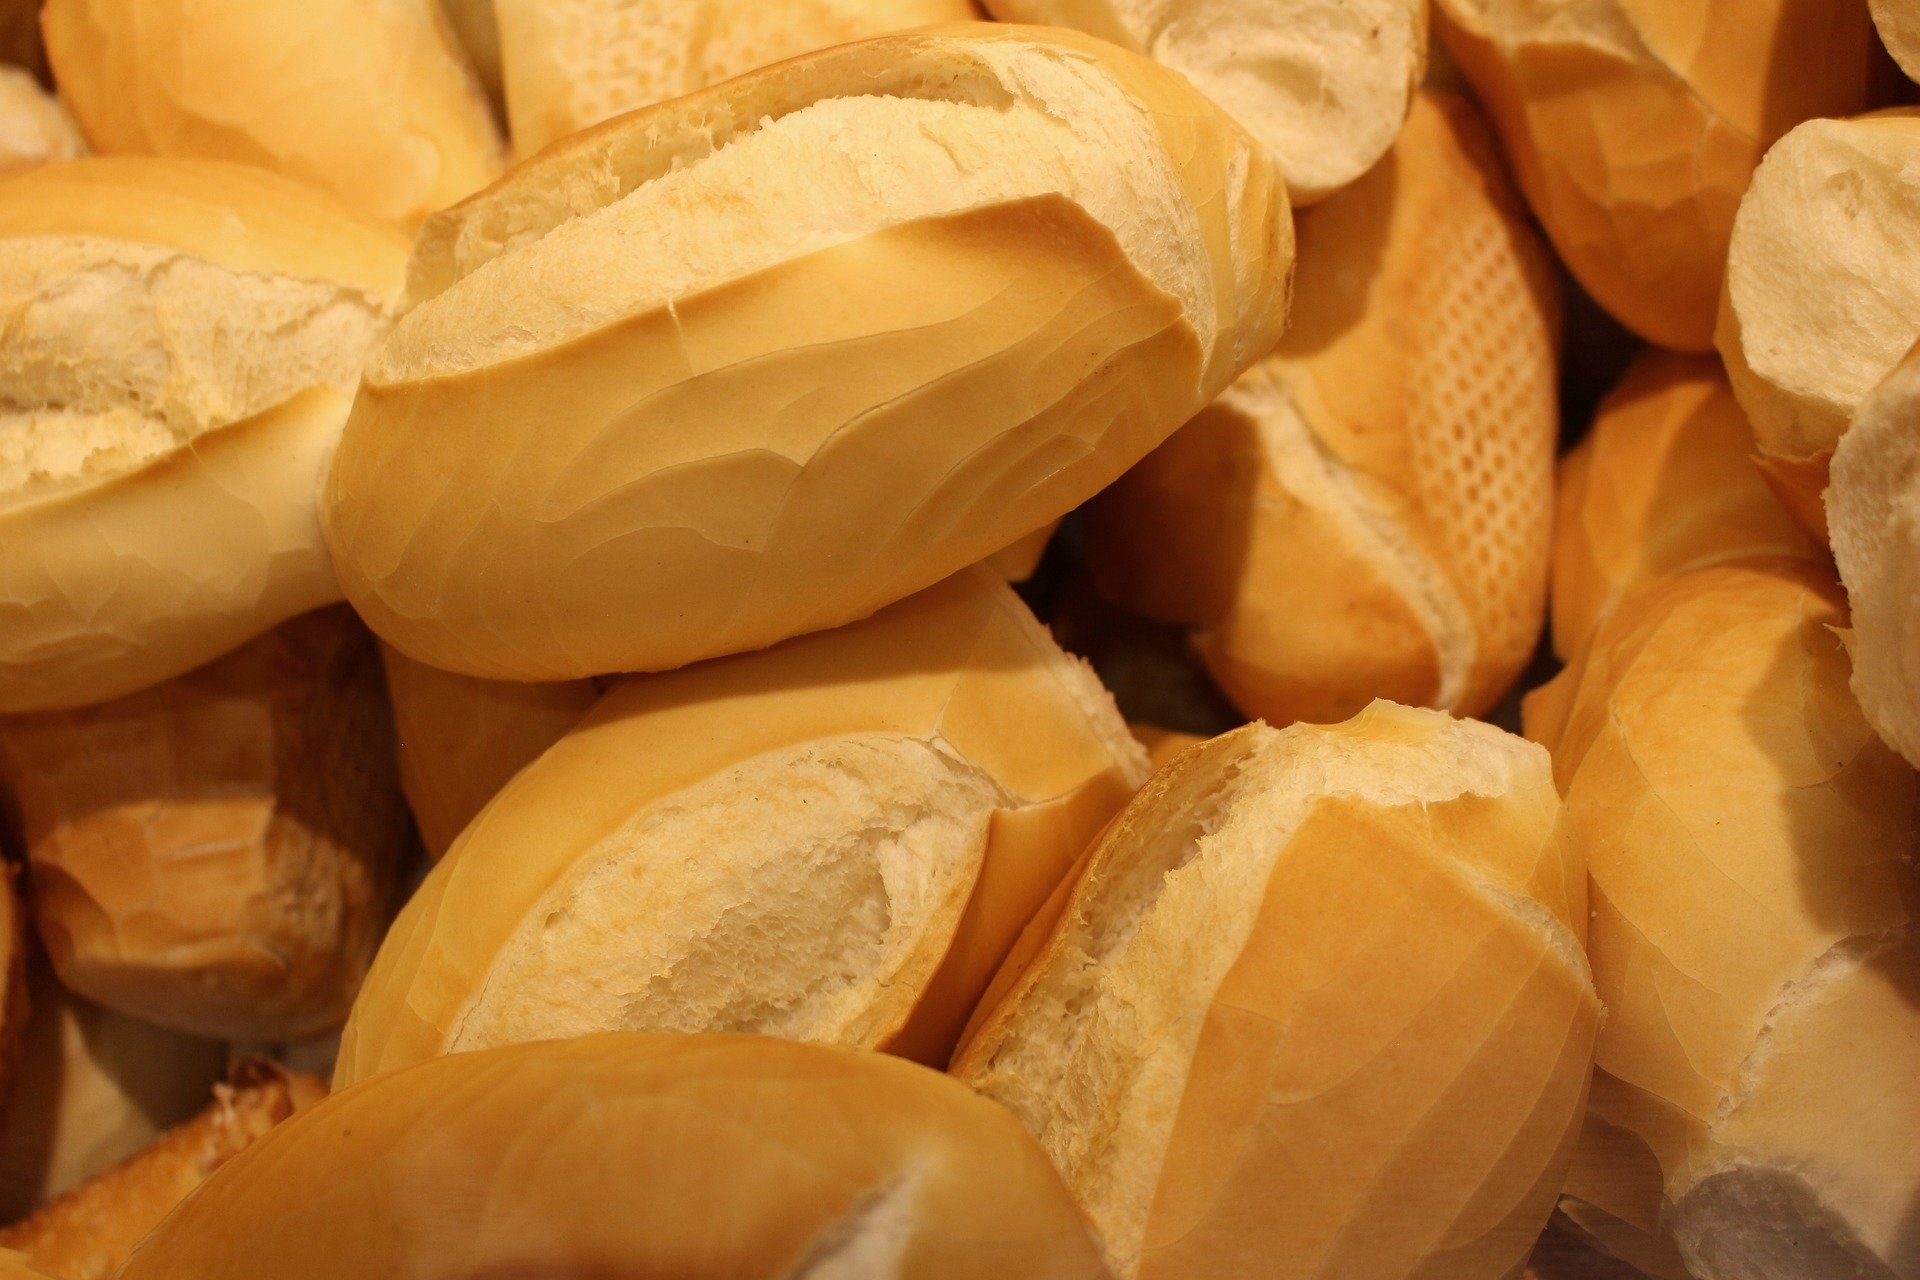 Entenda: guerra na Ucrânia pode deixar pão francês mais caro no Brasil